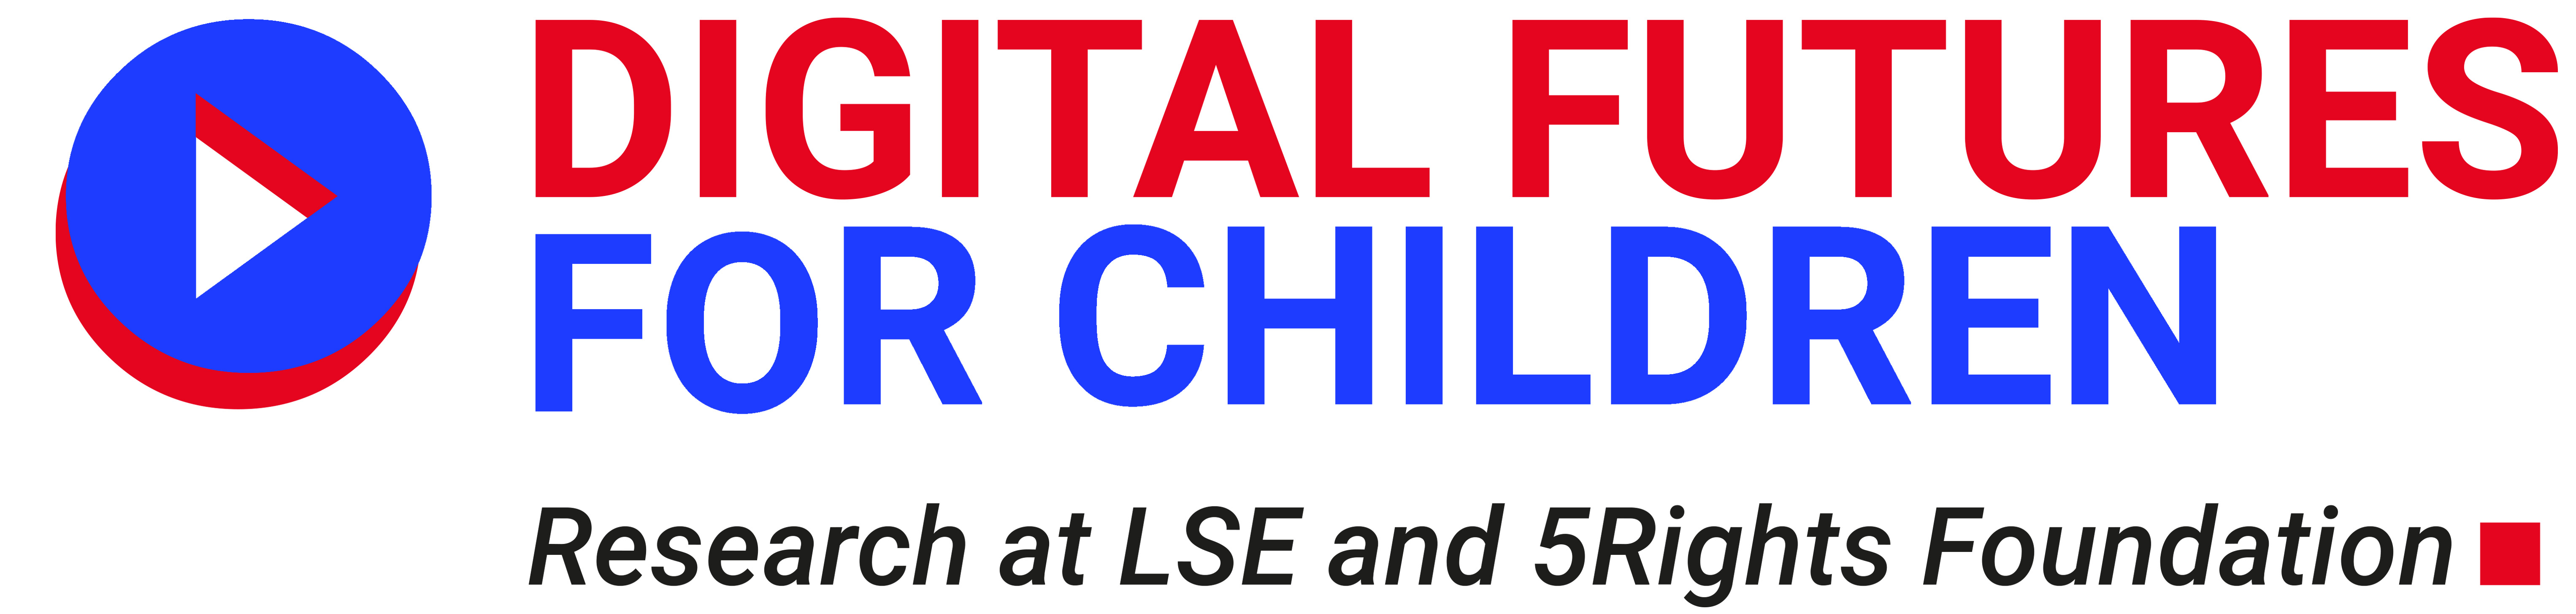 Digital_Futures_For_Children-logo-white